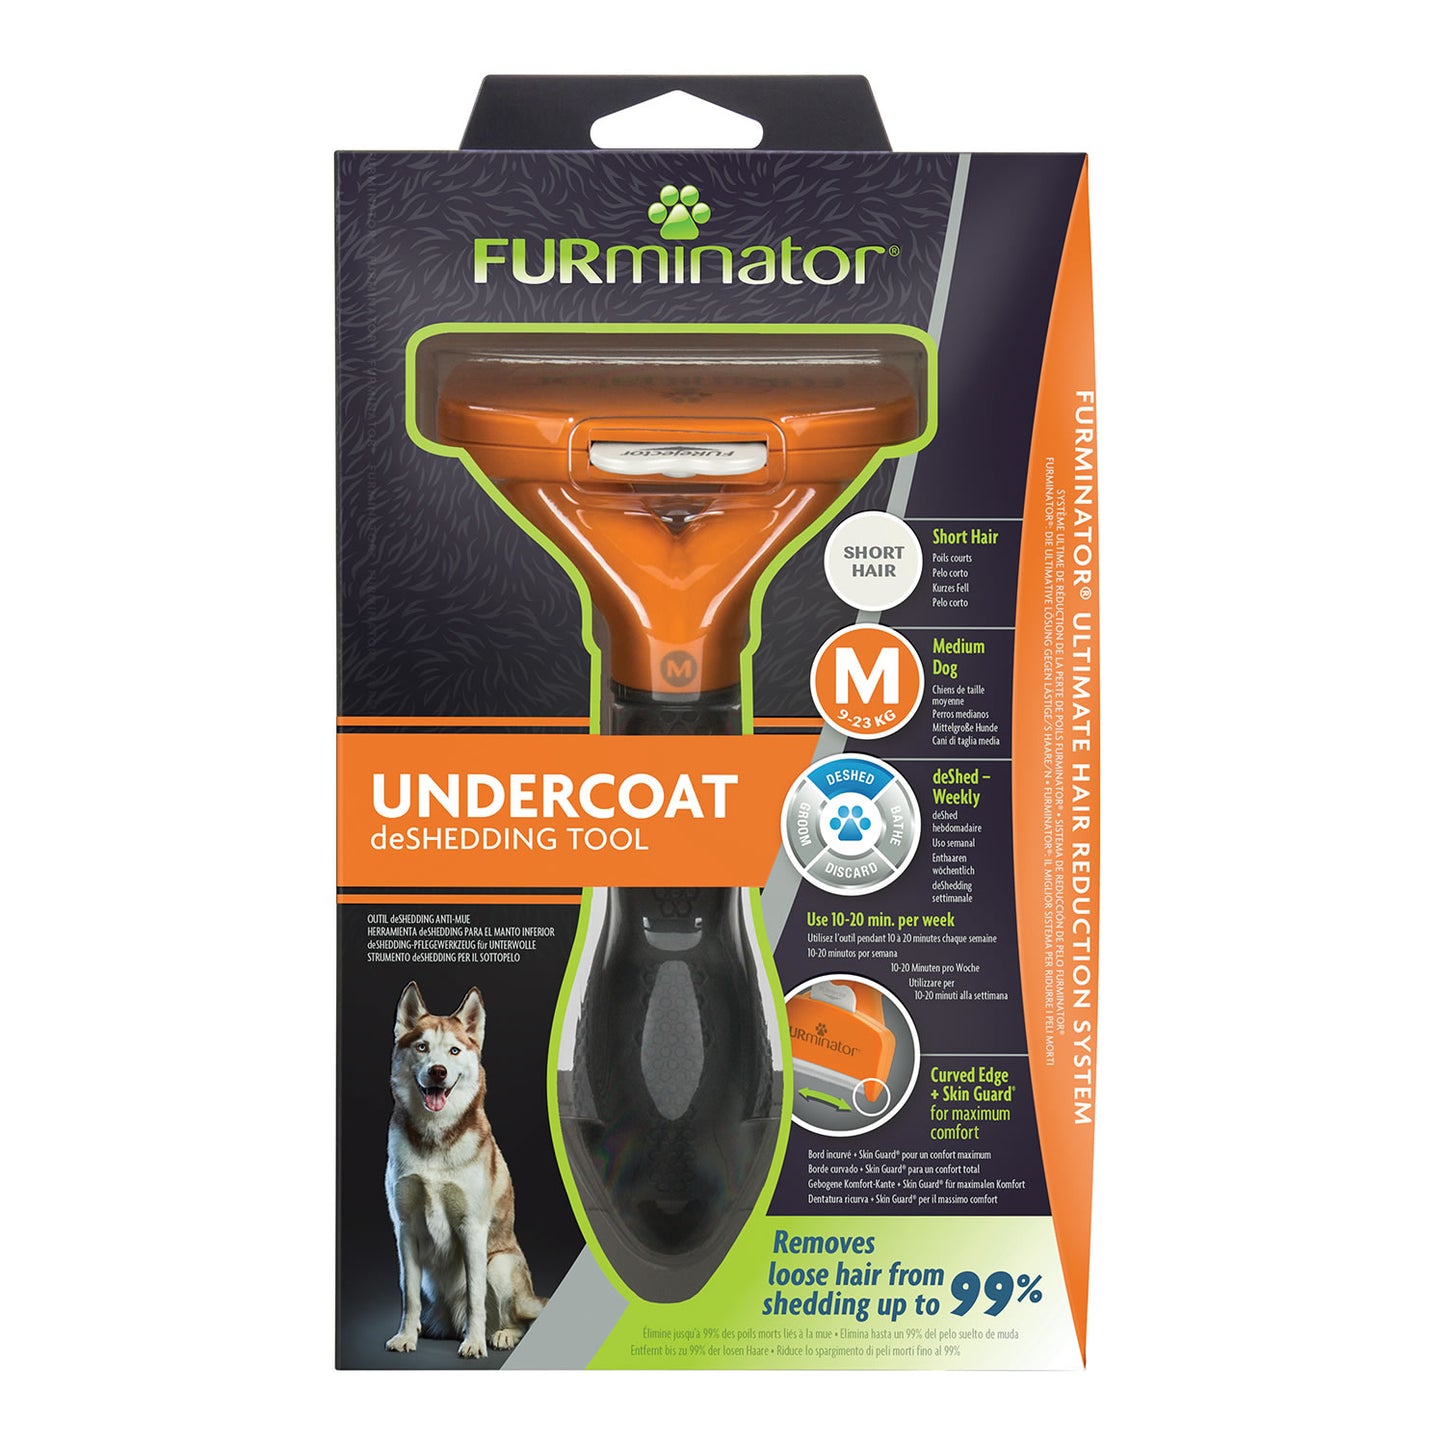 Furminator Undercoat DeShedding Tool for Short Hair Dog